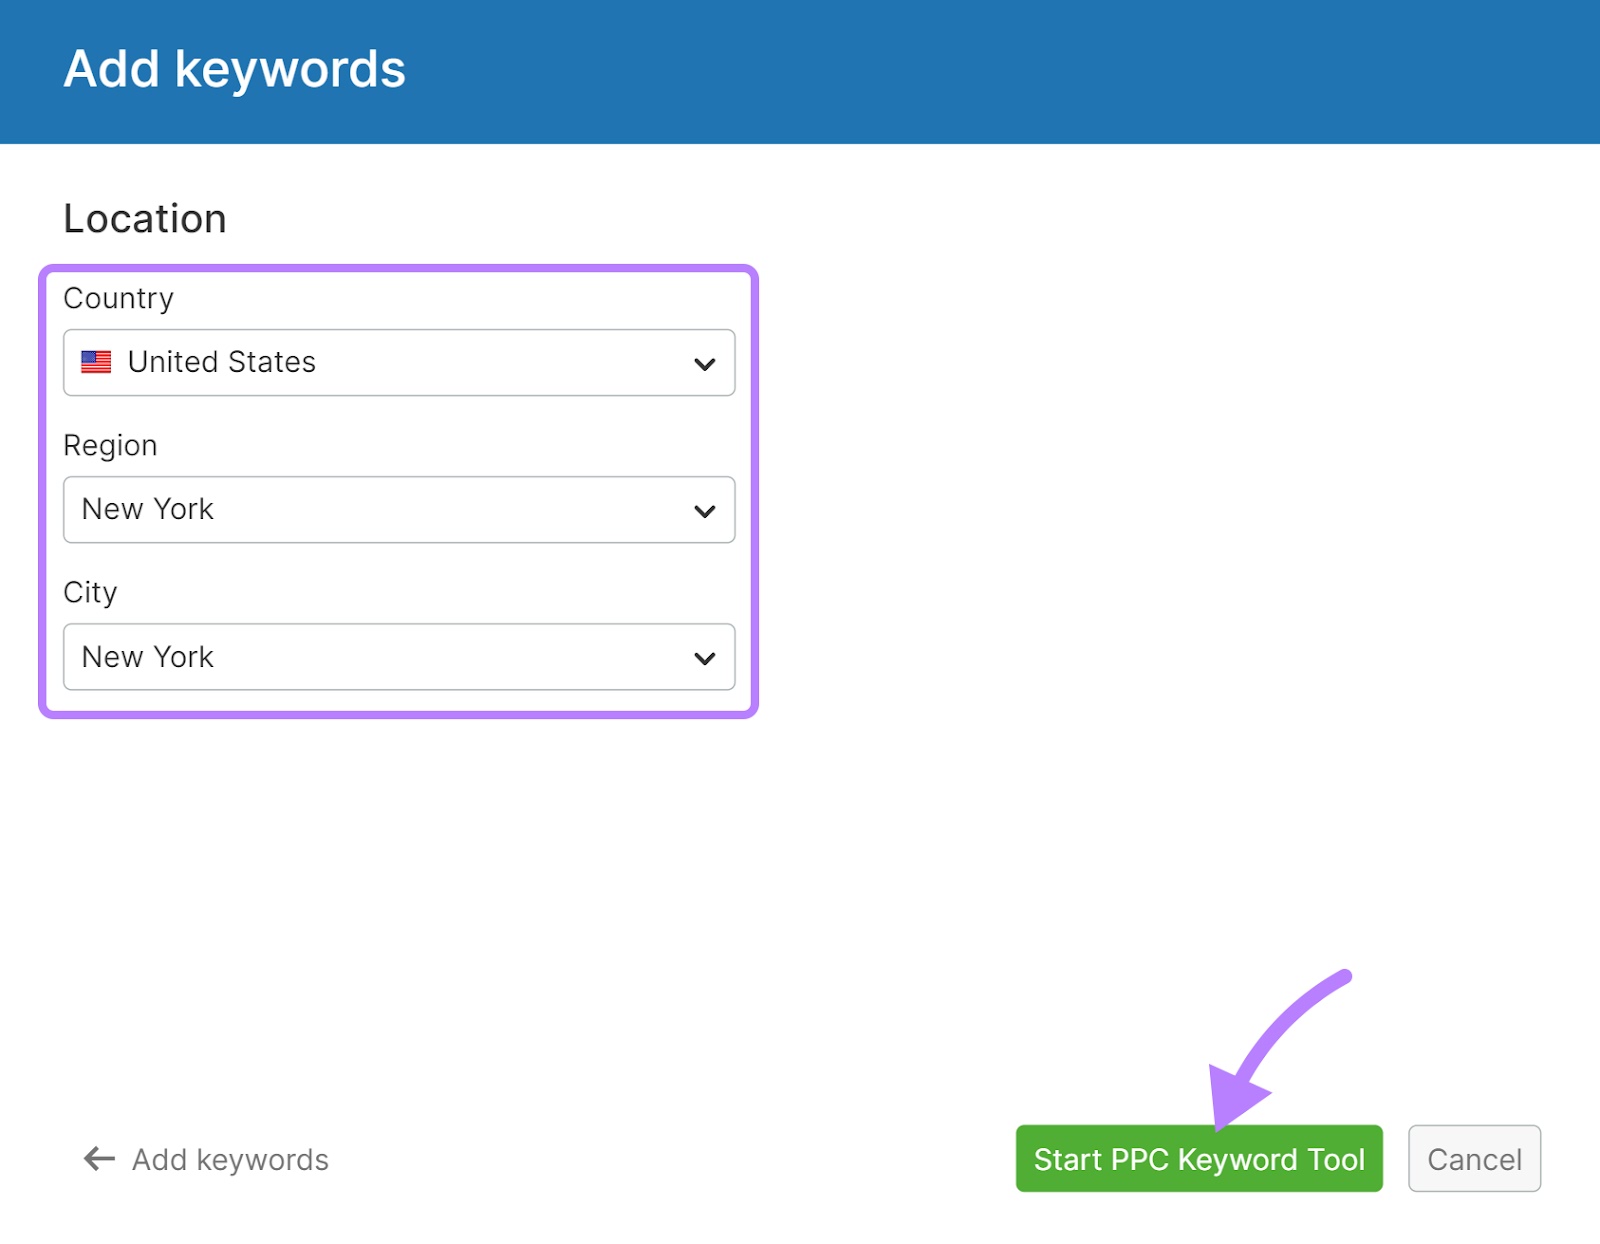 "Start PPC Keyword Tool" button